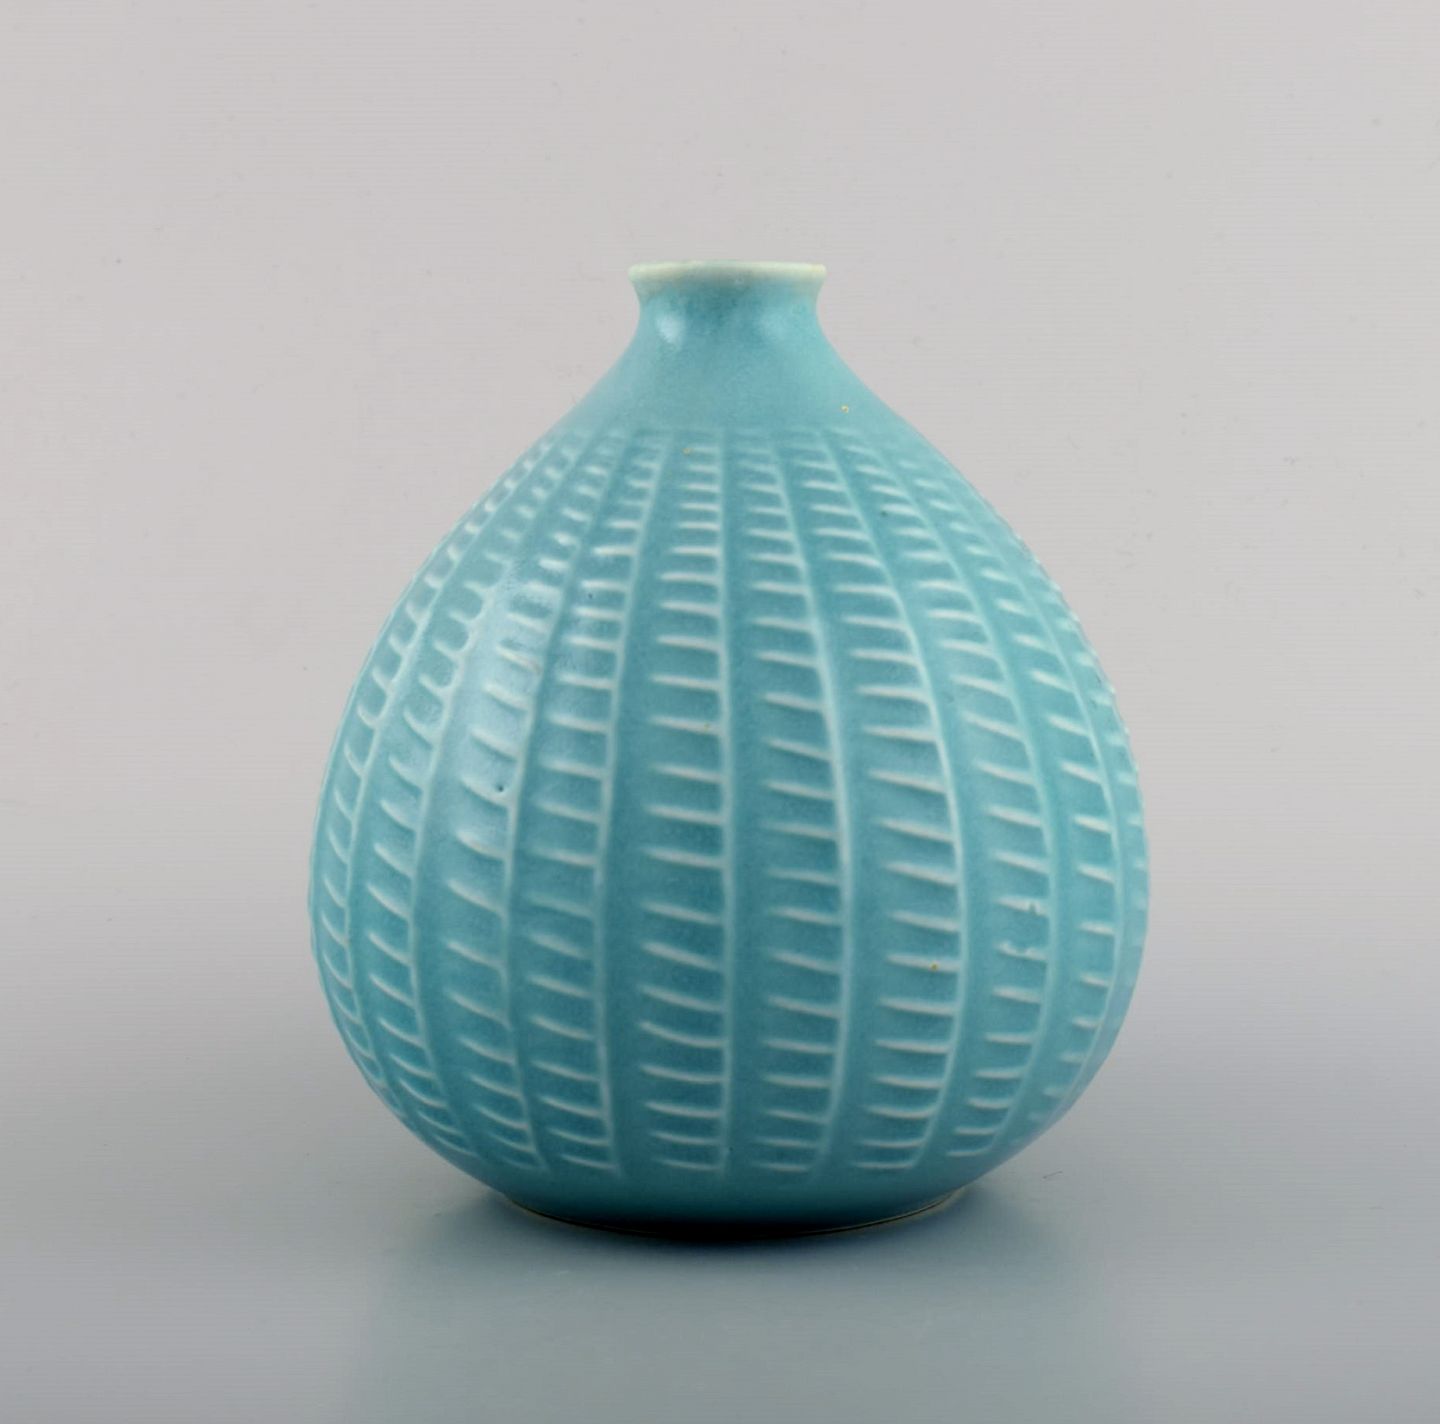 www.Antikvitet.net - Løgformet vase i glaseret keramik. Smuk glasur i turkis nauncer. Finsk design, midt 1900-tall